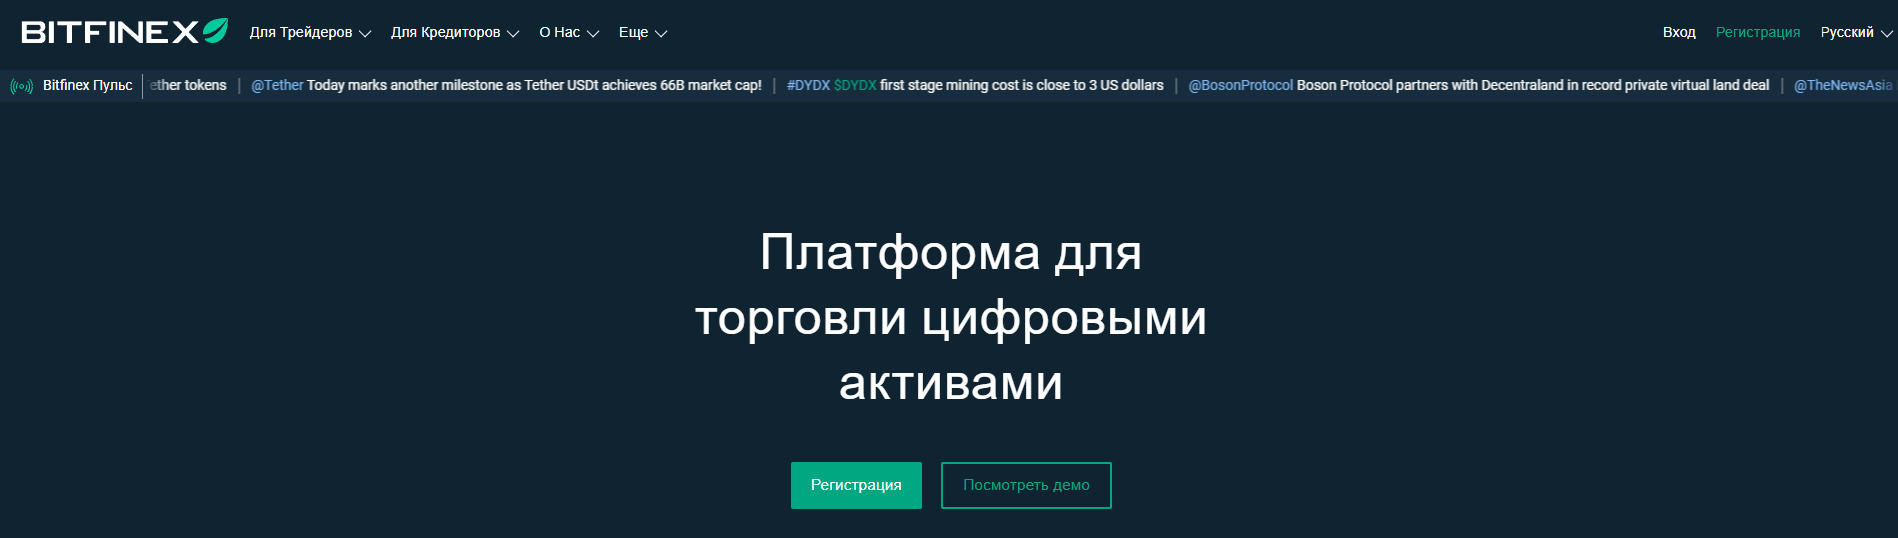 официальный сайт Bitfinex